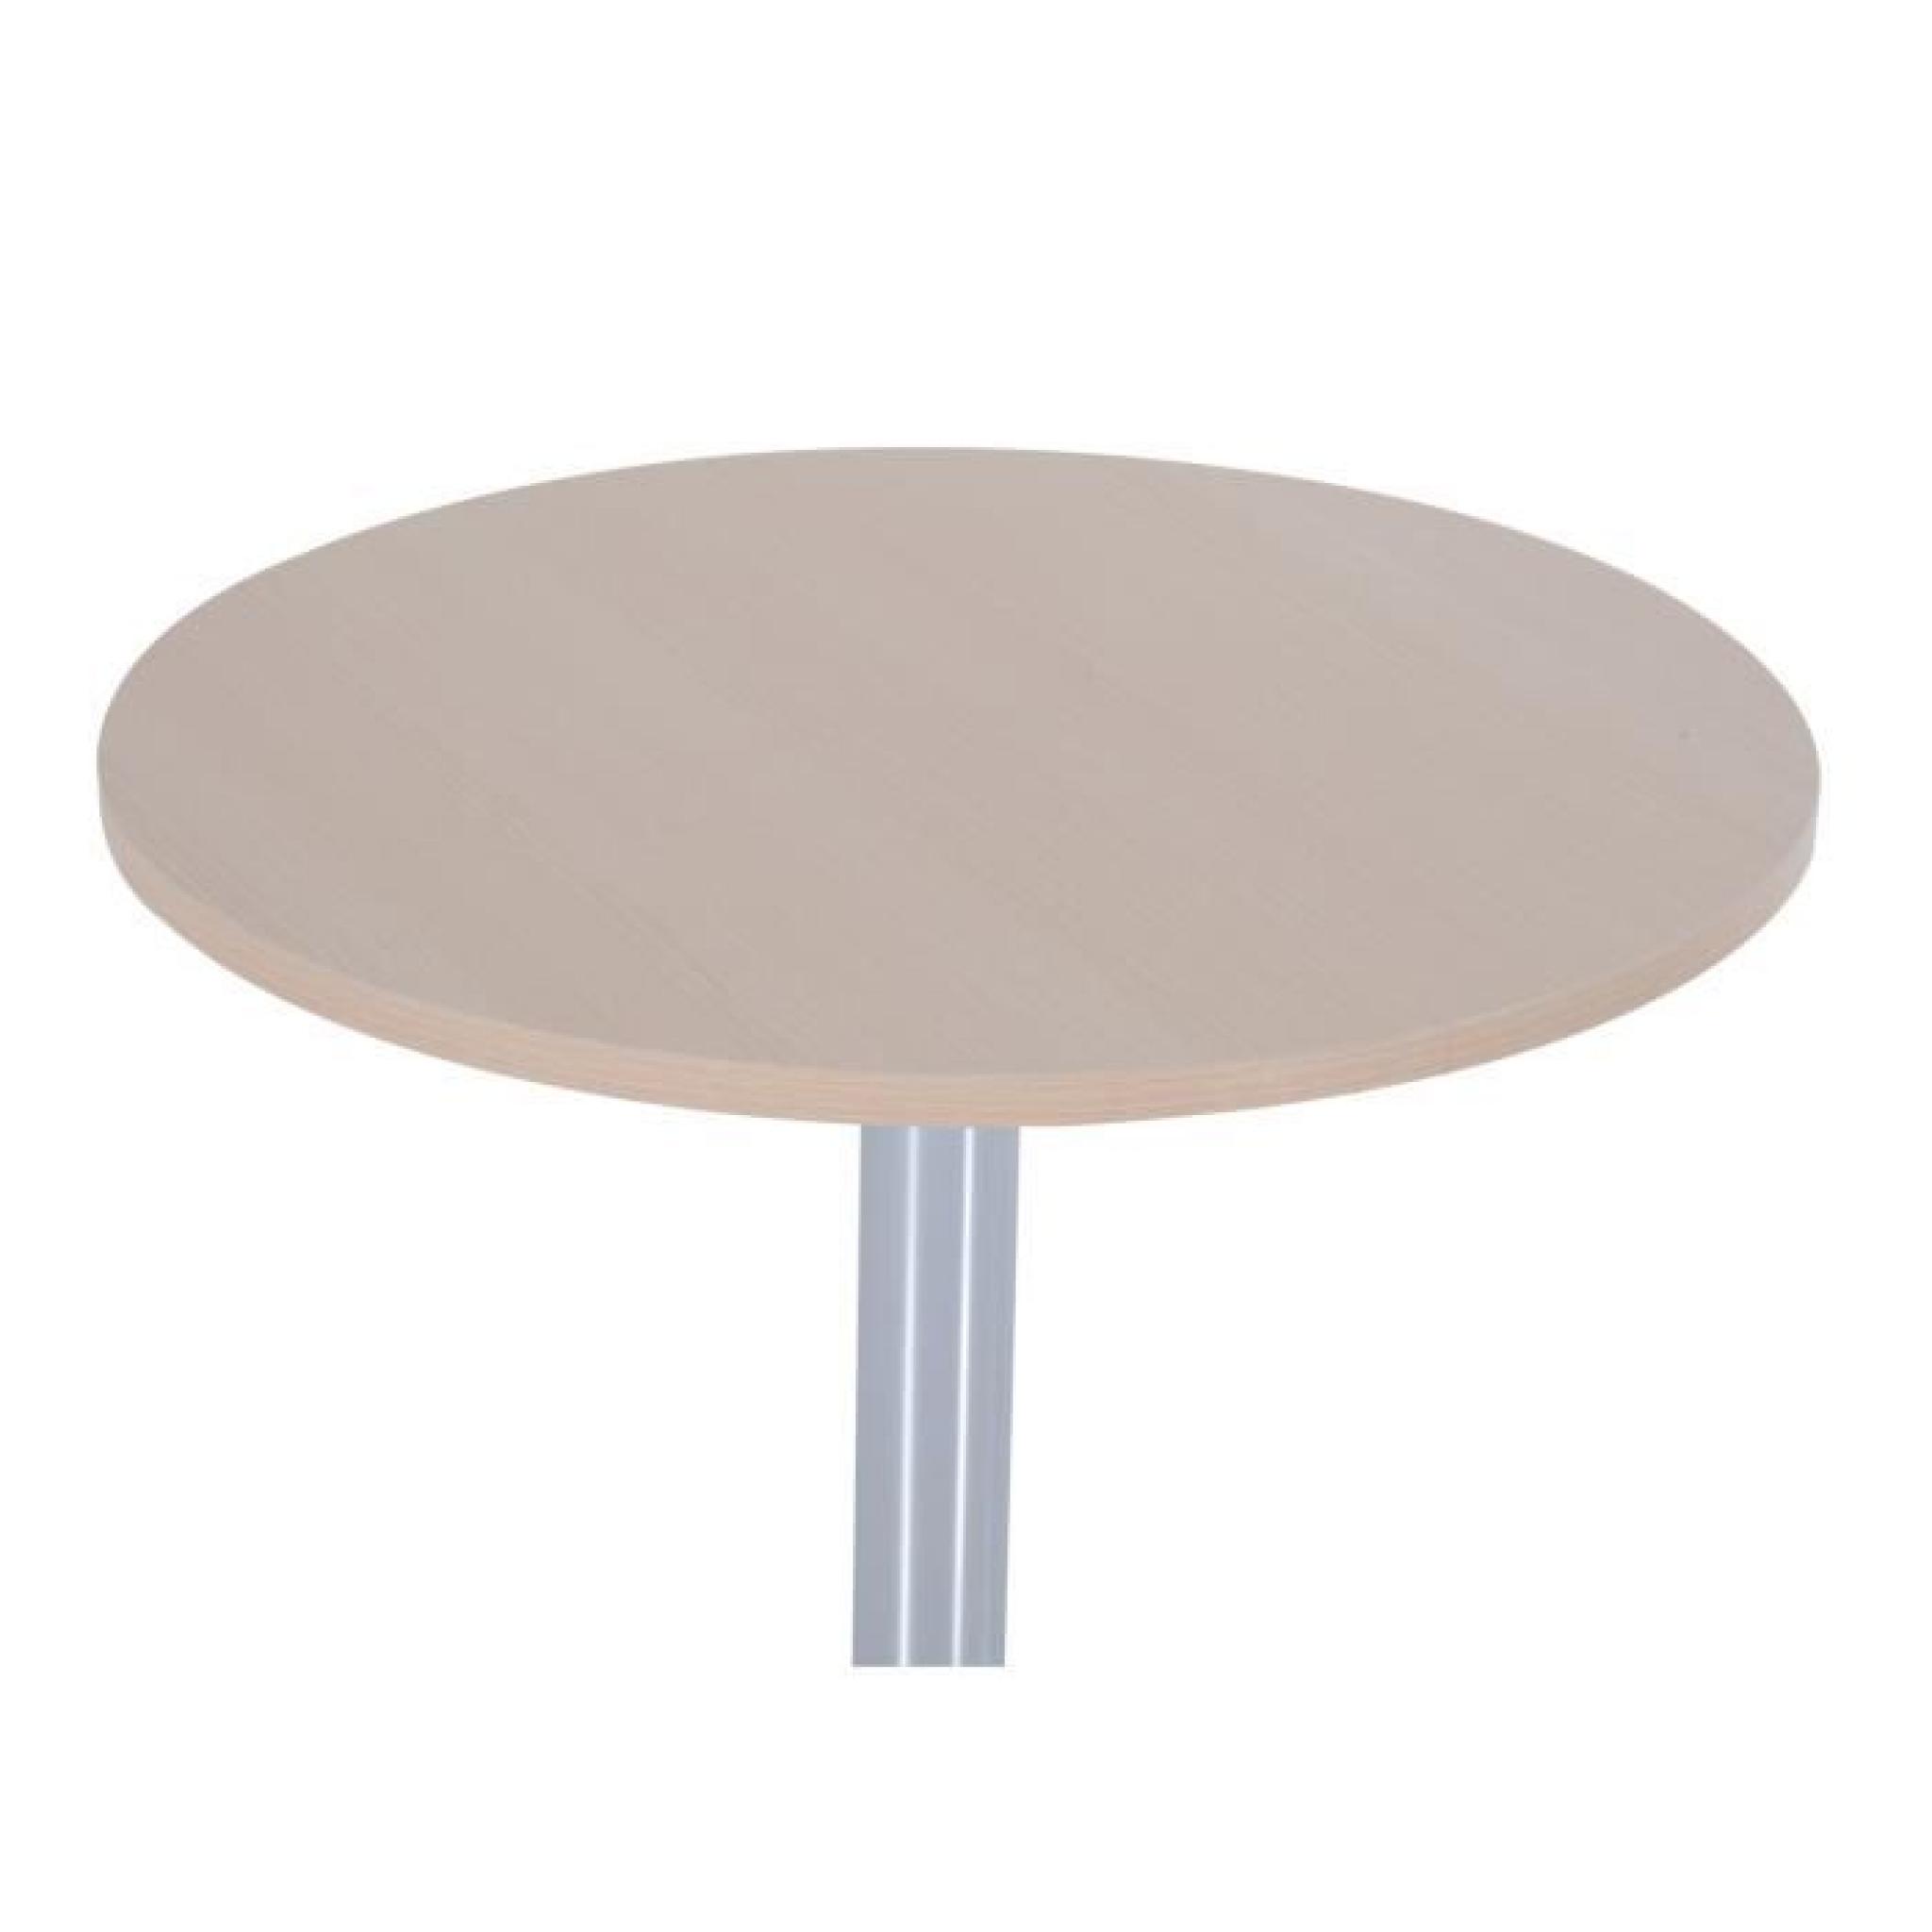 Table bar bistrot table à manger cylindrique beau design MDF PVC fer galvanisé Φ60x66H cm brun neuf 02 pas cher